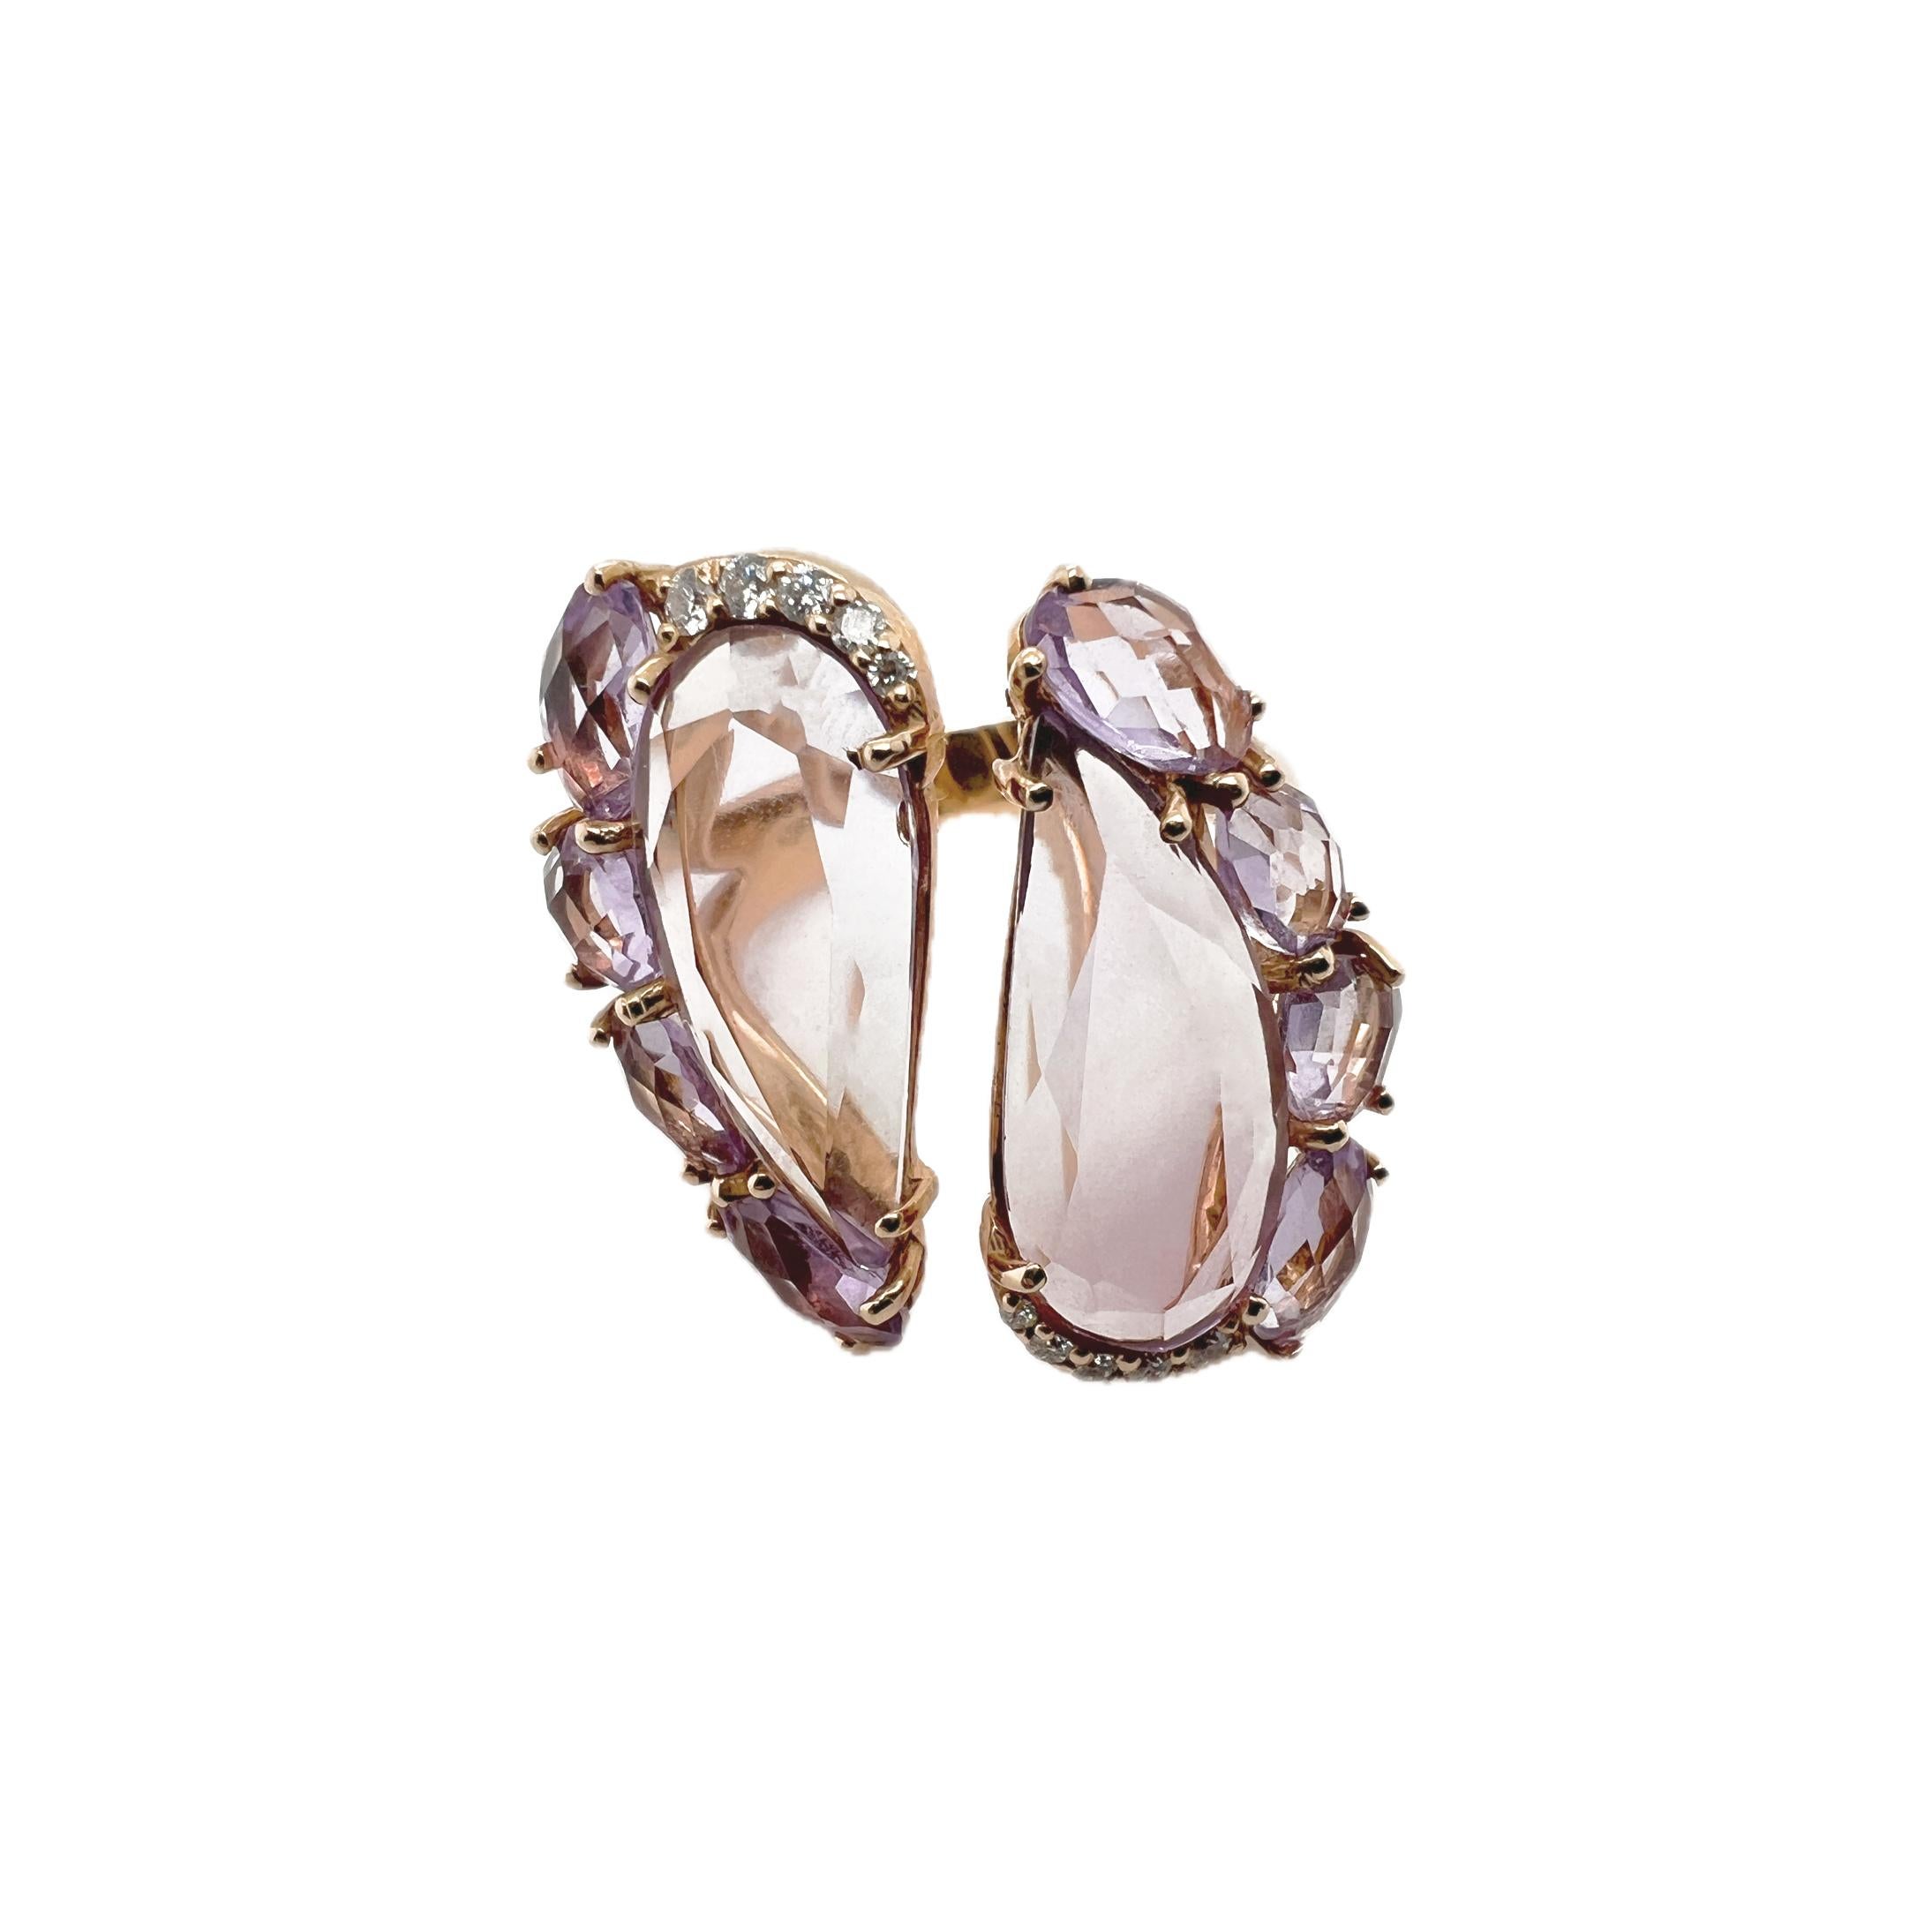 Alle unsere Schmuckstücke werden von italienischen Kunsthandwerkern hergestellt, um das Made in Italy zu garantieren. 

Der Ring aus 18 Karat Roségold mit facettierten Amethysten und Diamanten ist ein wunderschönes und einzigartiges Schmuckstück.